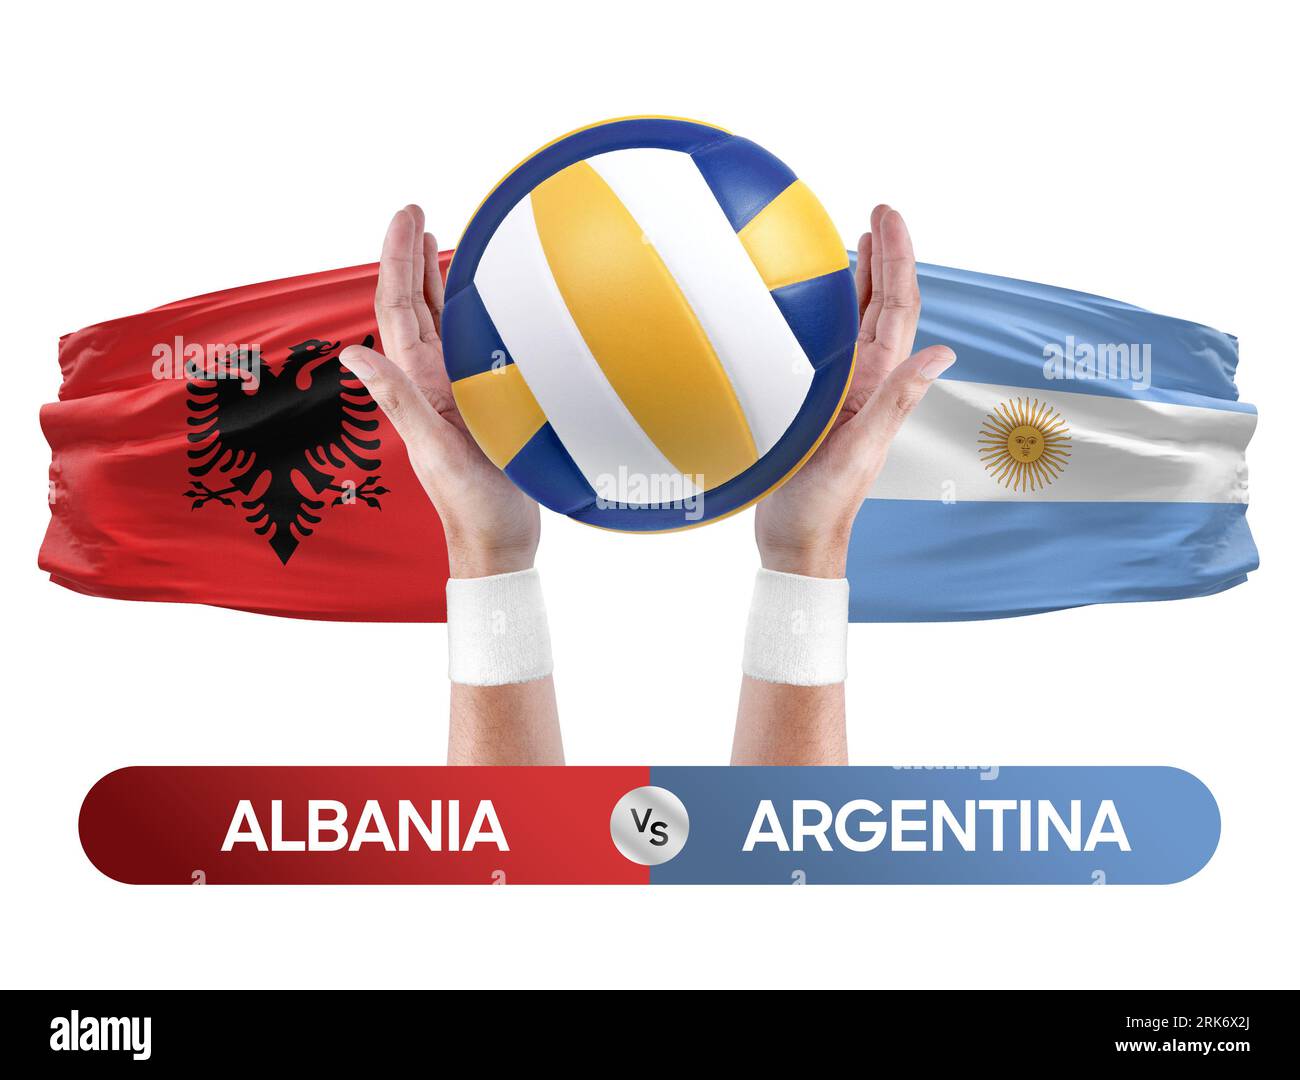 Albanien gegen Argentinien Nationalmannschaften Volleyball Volleyball-Volleyball-Spiel-Wettkampf-Konzept. Stockfoto